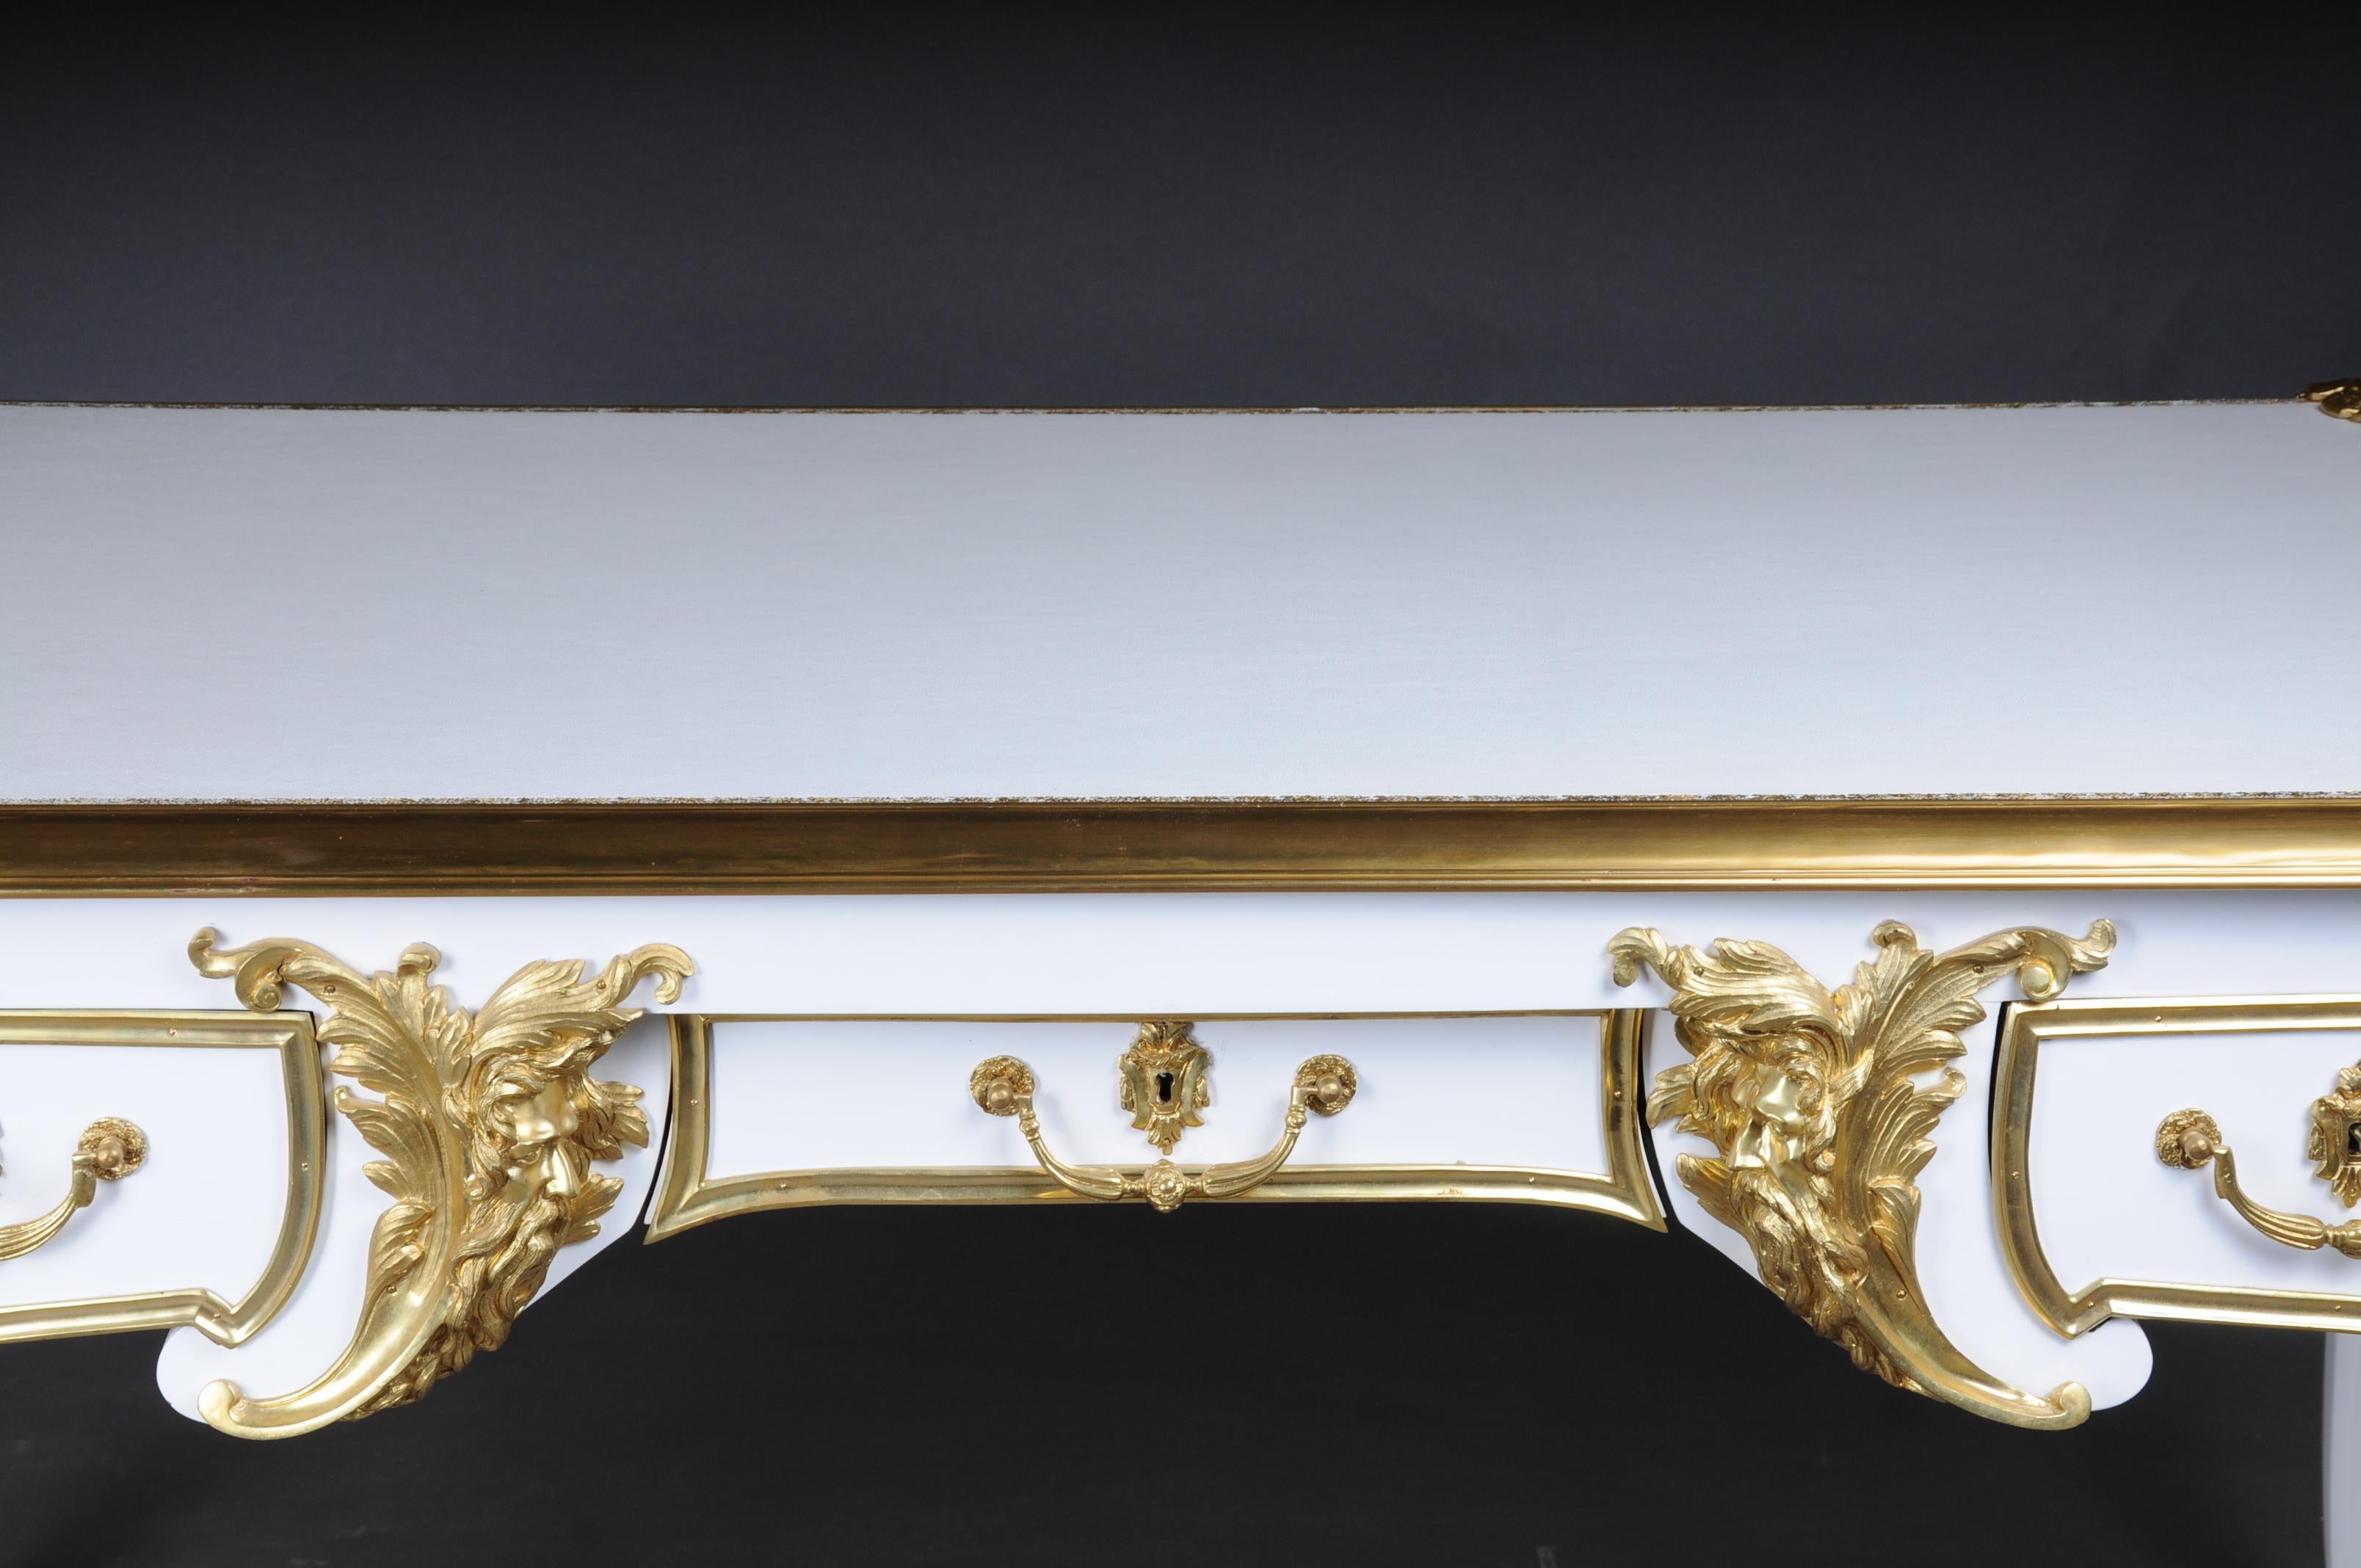 20. Jahrhundert Bureau Plat/Desk hochglänzend weiß mit Gold nach C. Boulle

Dieses Modell wurde von Charles Boulle, dem bedeutendsten Historiker Ludwigs XV. gebaut.
Klavierweiß Poliertes Furnier auf massiver Buche und Eiche. Äußerst fein ziselierte